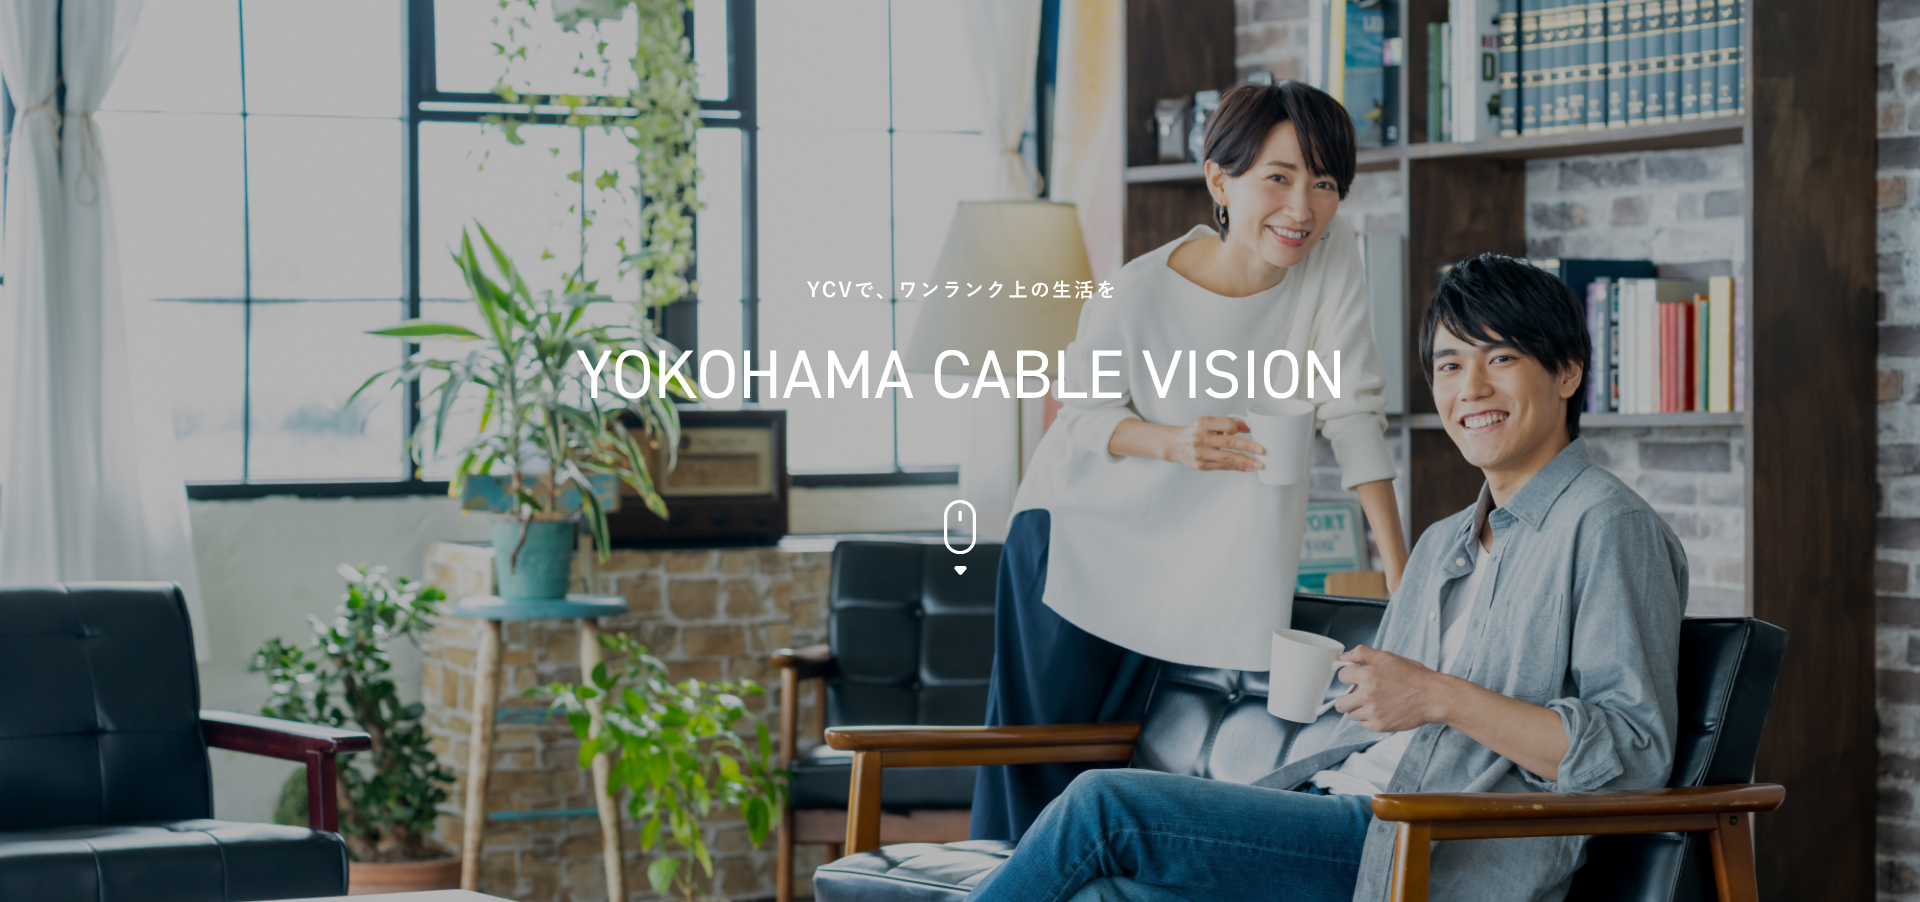 YOKOHAMA CABLE VISION